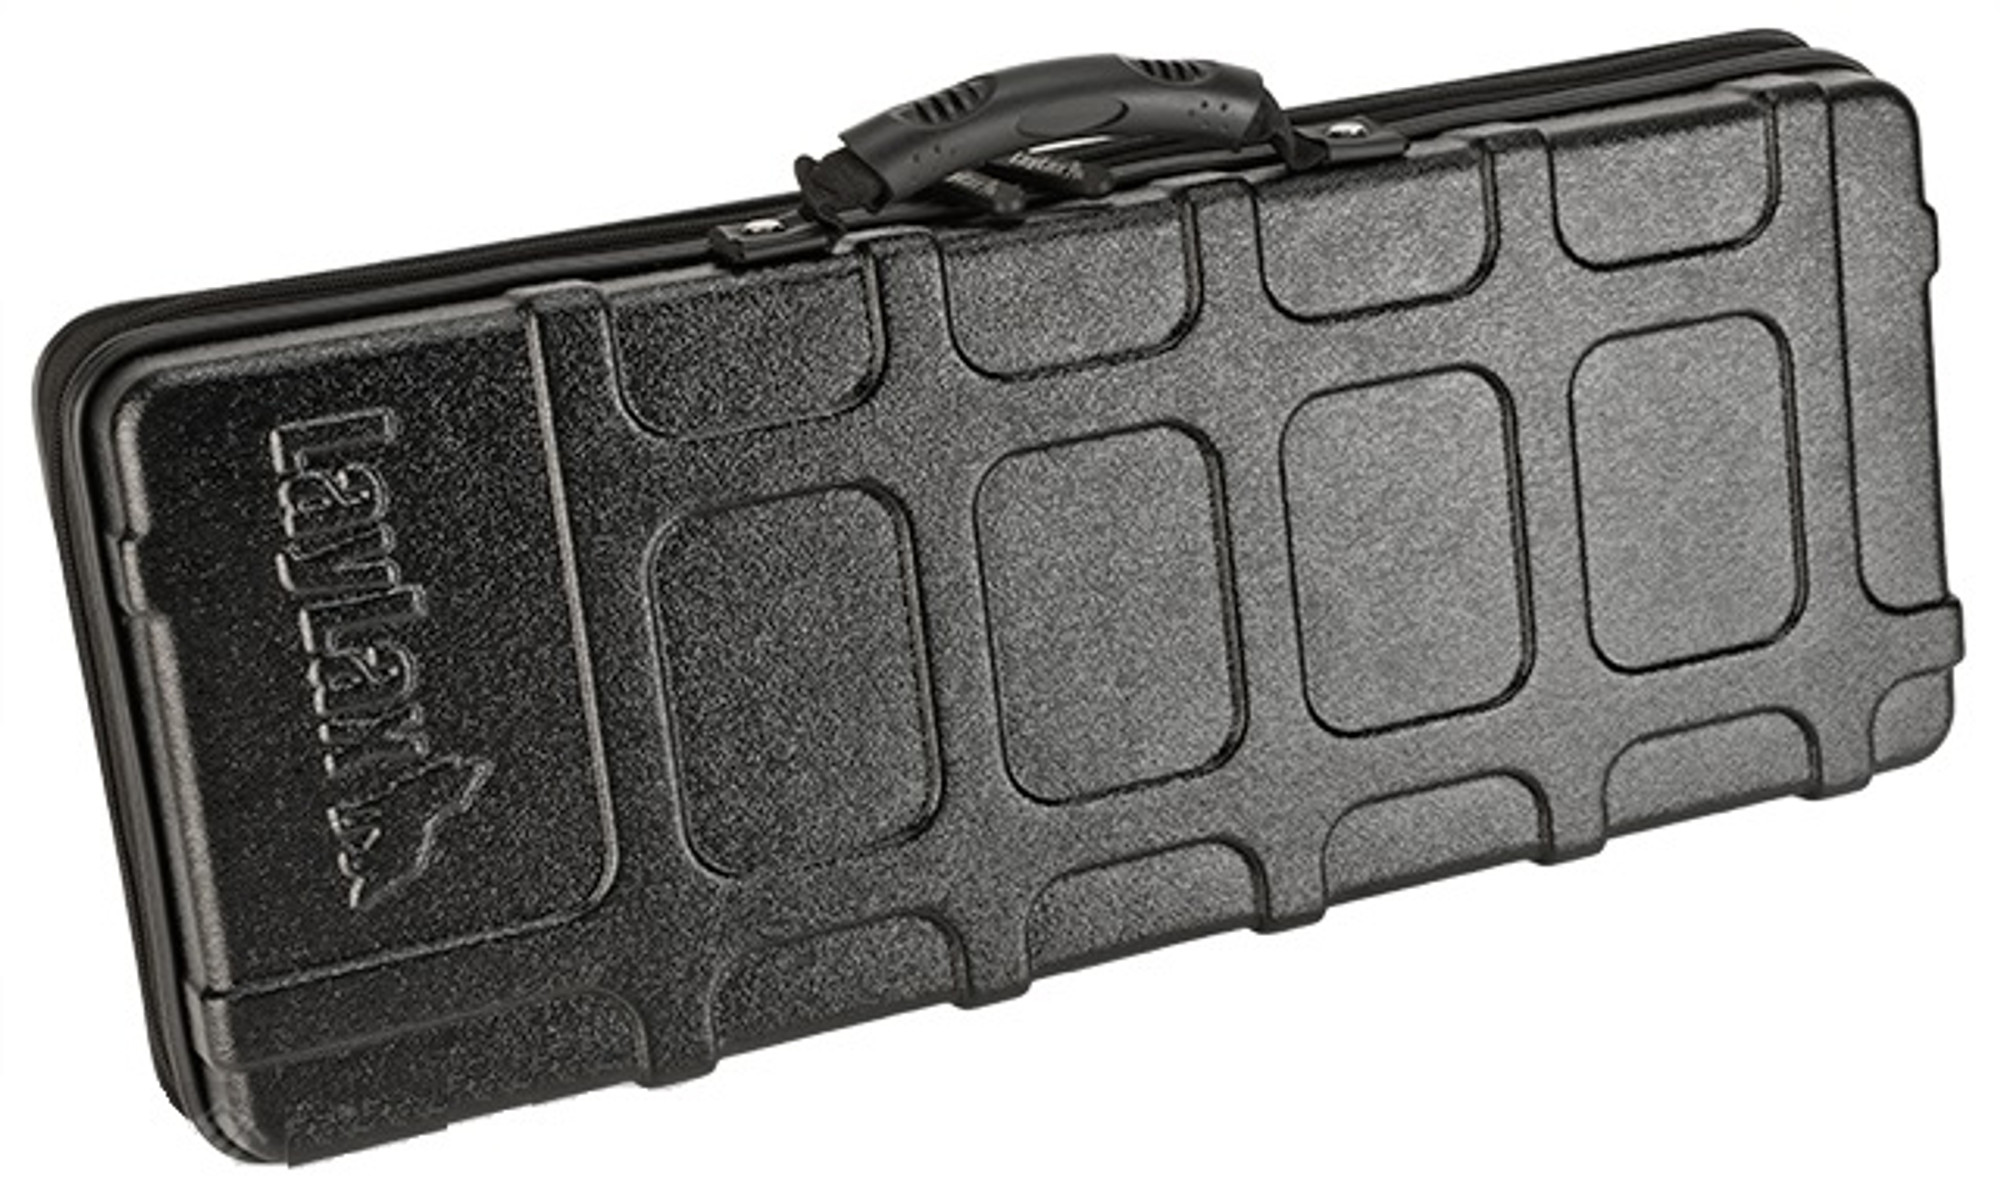 Laylax Light Gun Case For Handgun & Air Soft Sub-Machine Gun - Black